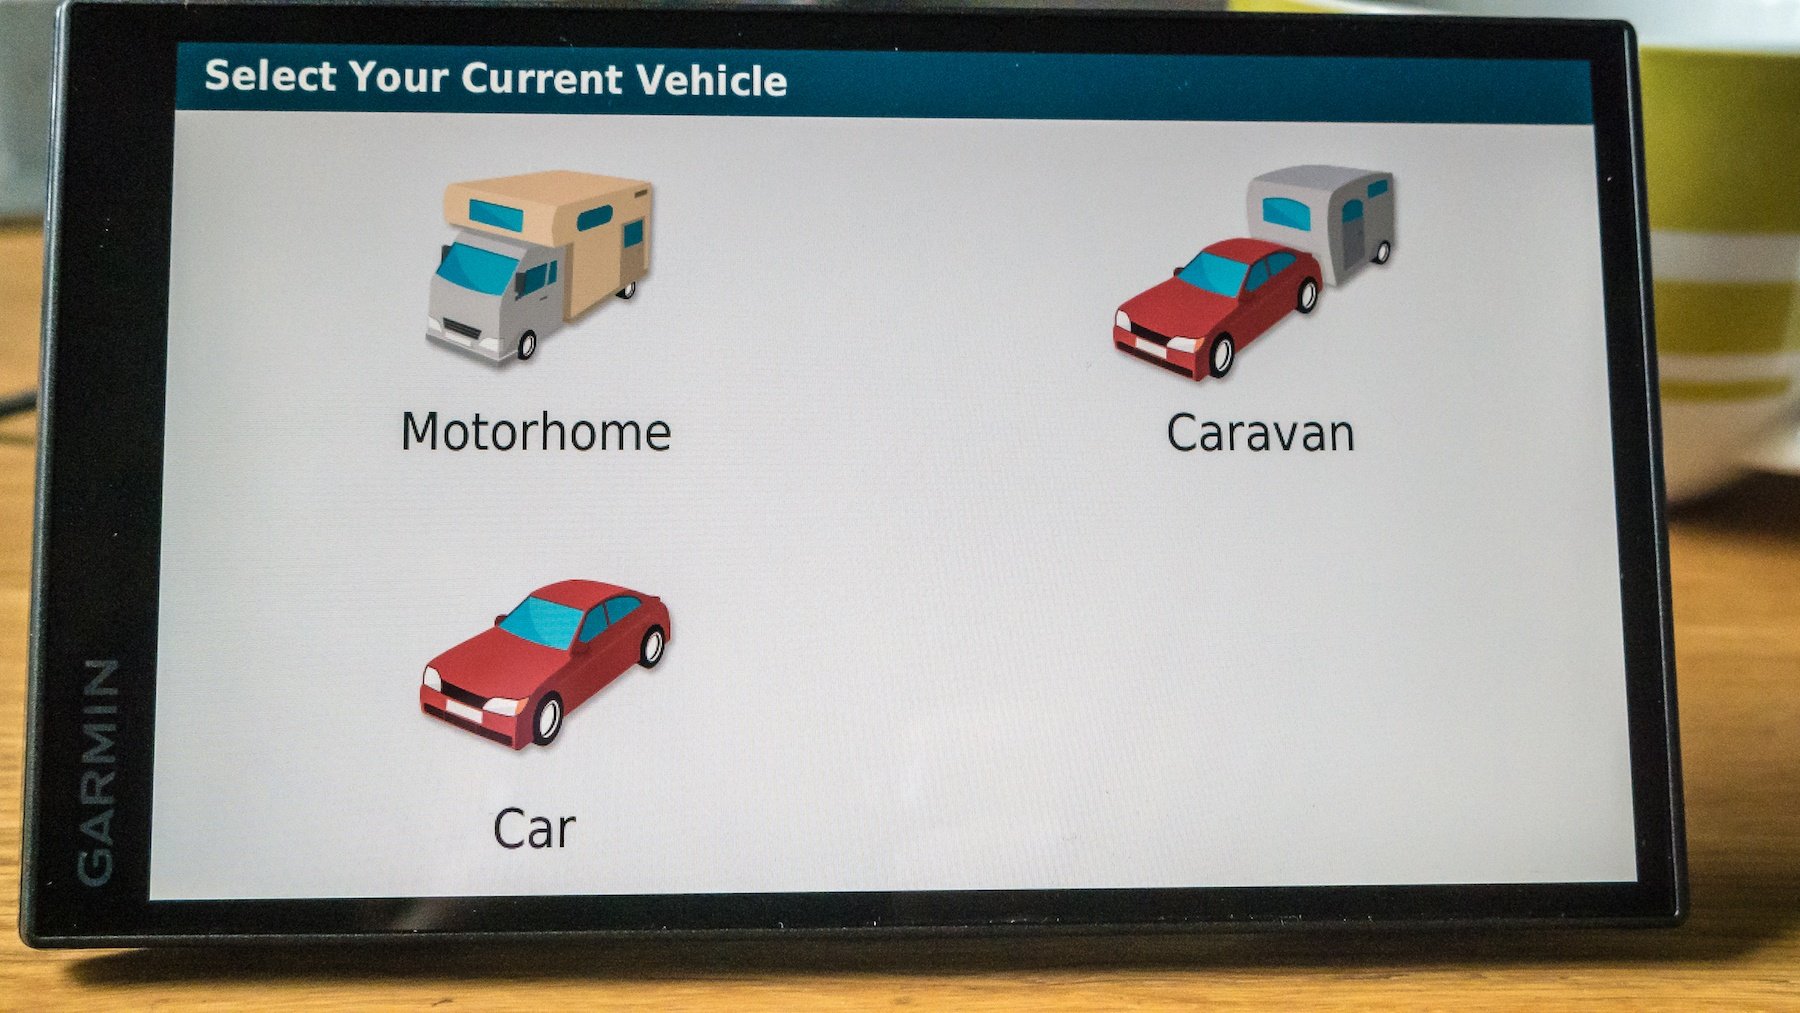 Choosing your vehicle: Motorhome, Caravan, or just the Car.